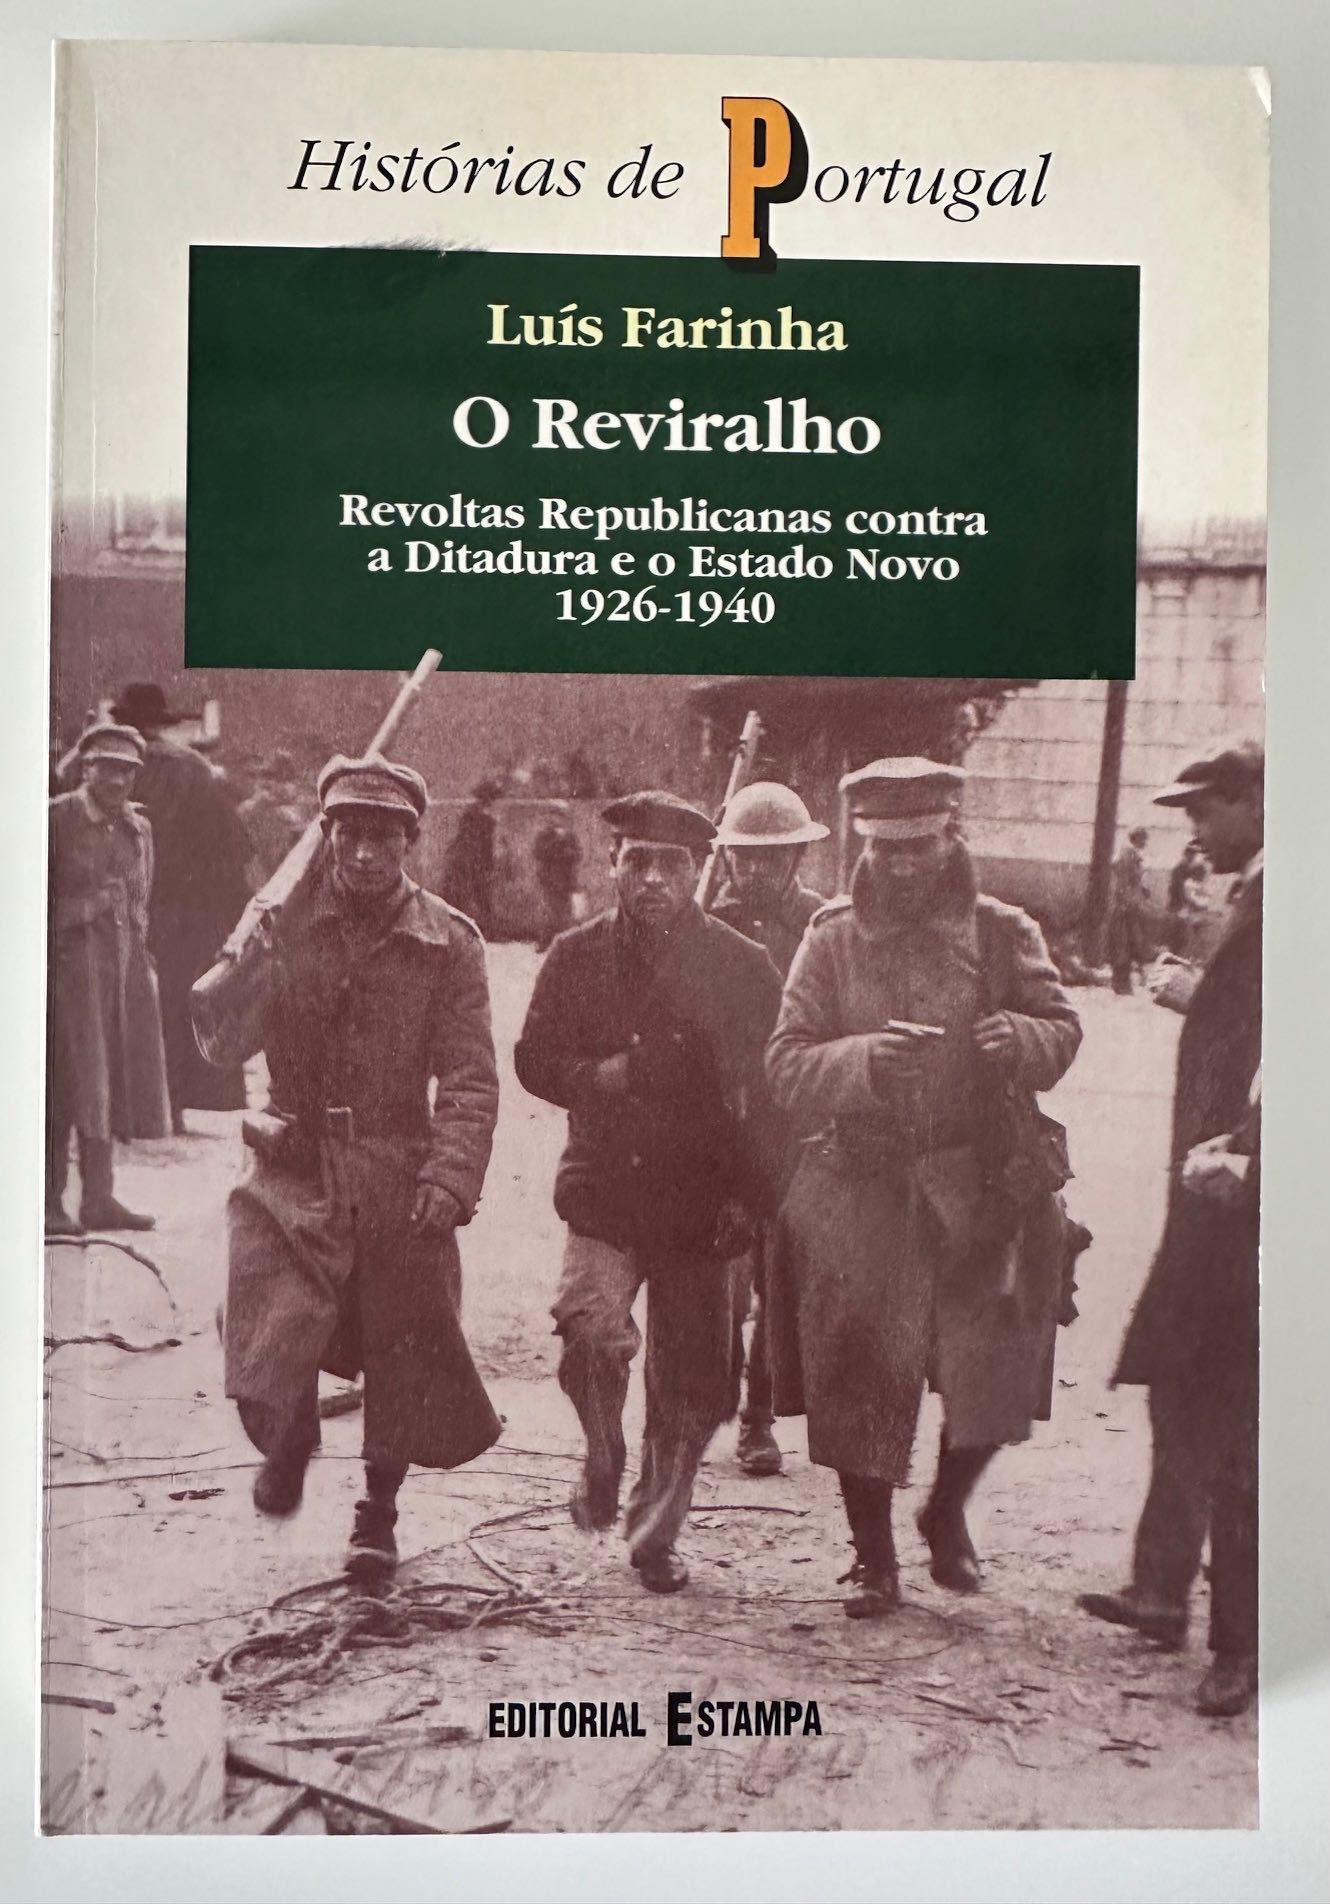 O Reviralho - Luís Farinha - 1998